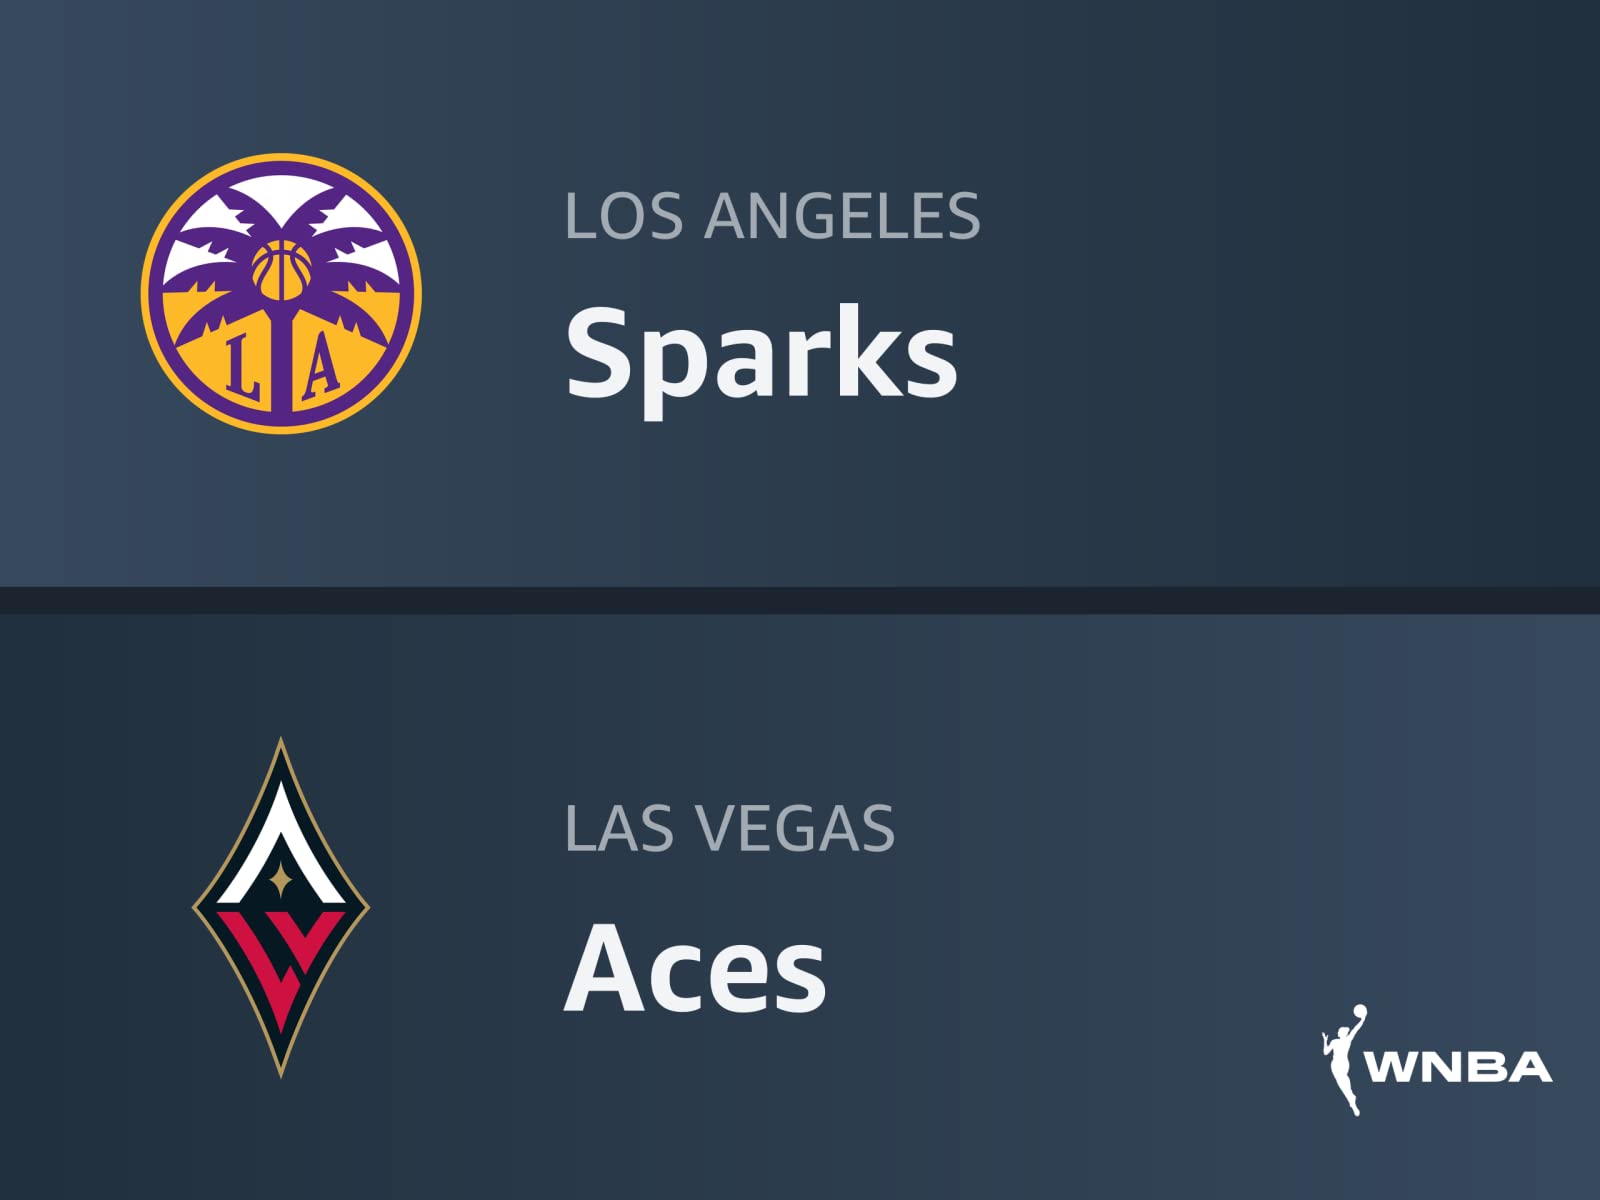 Los Angeles Sparks vs Las Vegas Aces WNBA Prediction 7/23/22